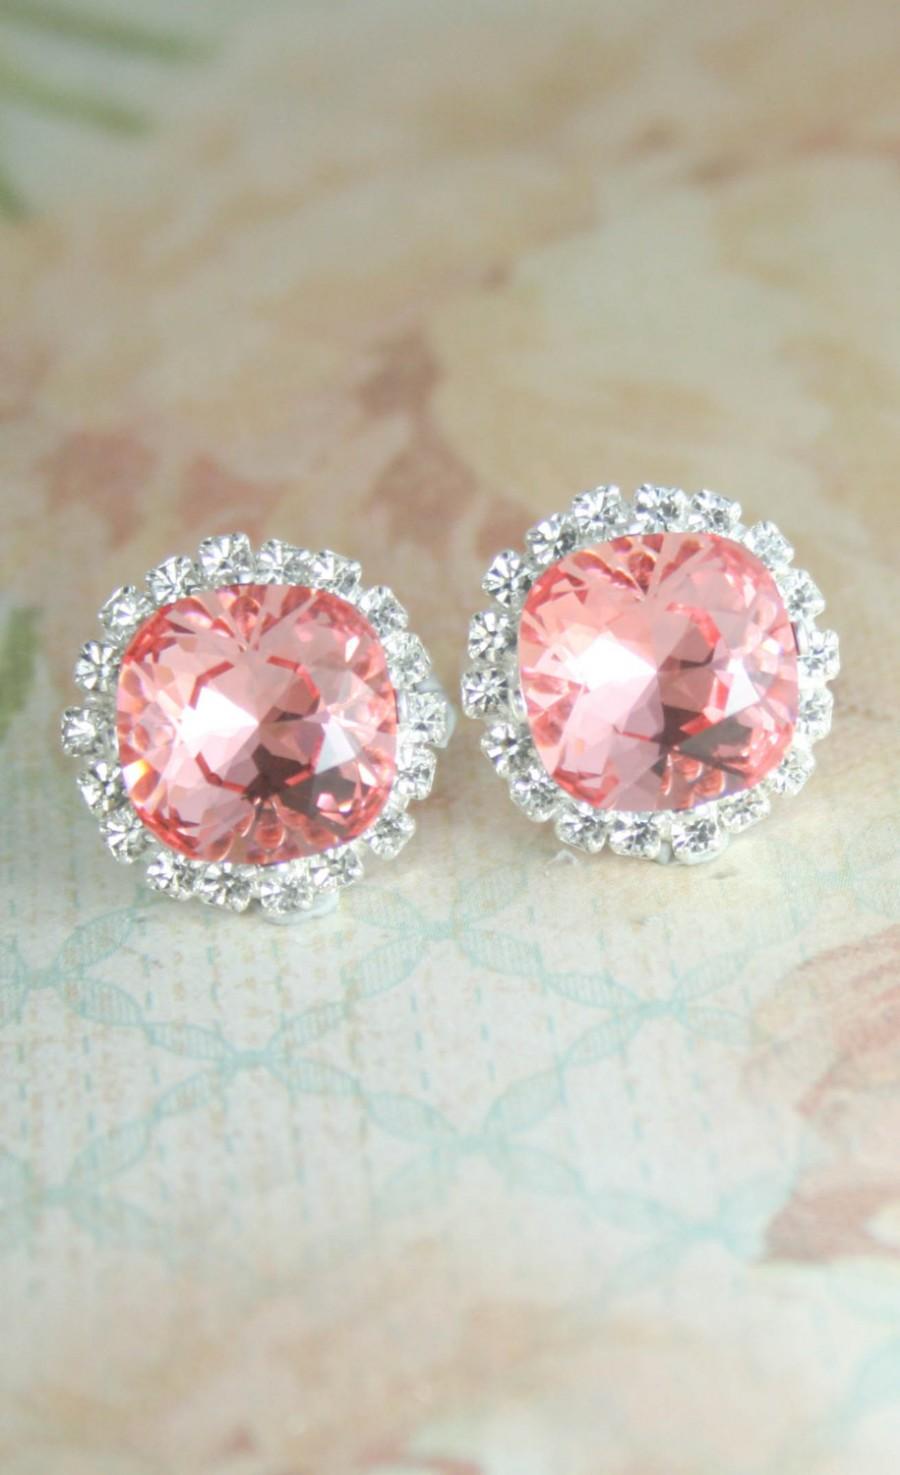 زفاف - Pink crystal earrings,swarovski earrings,square earrings,stud earrings,crystal earrings,bridal earrings,bridesmaid earrings,pink wedding